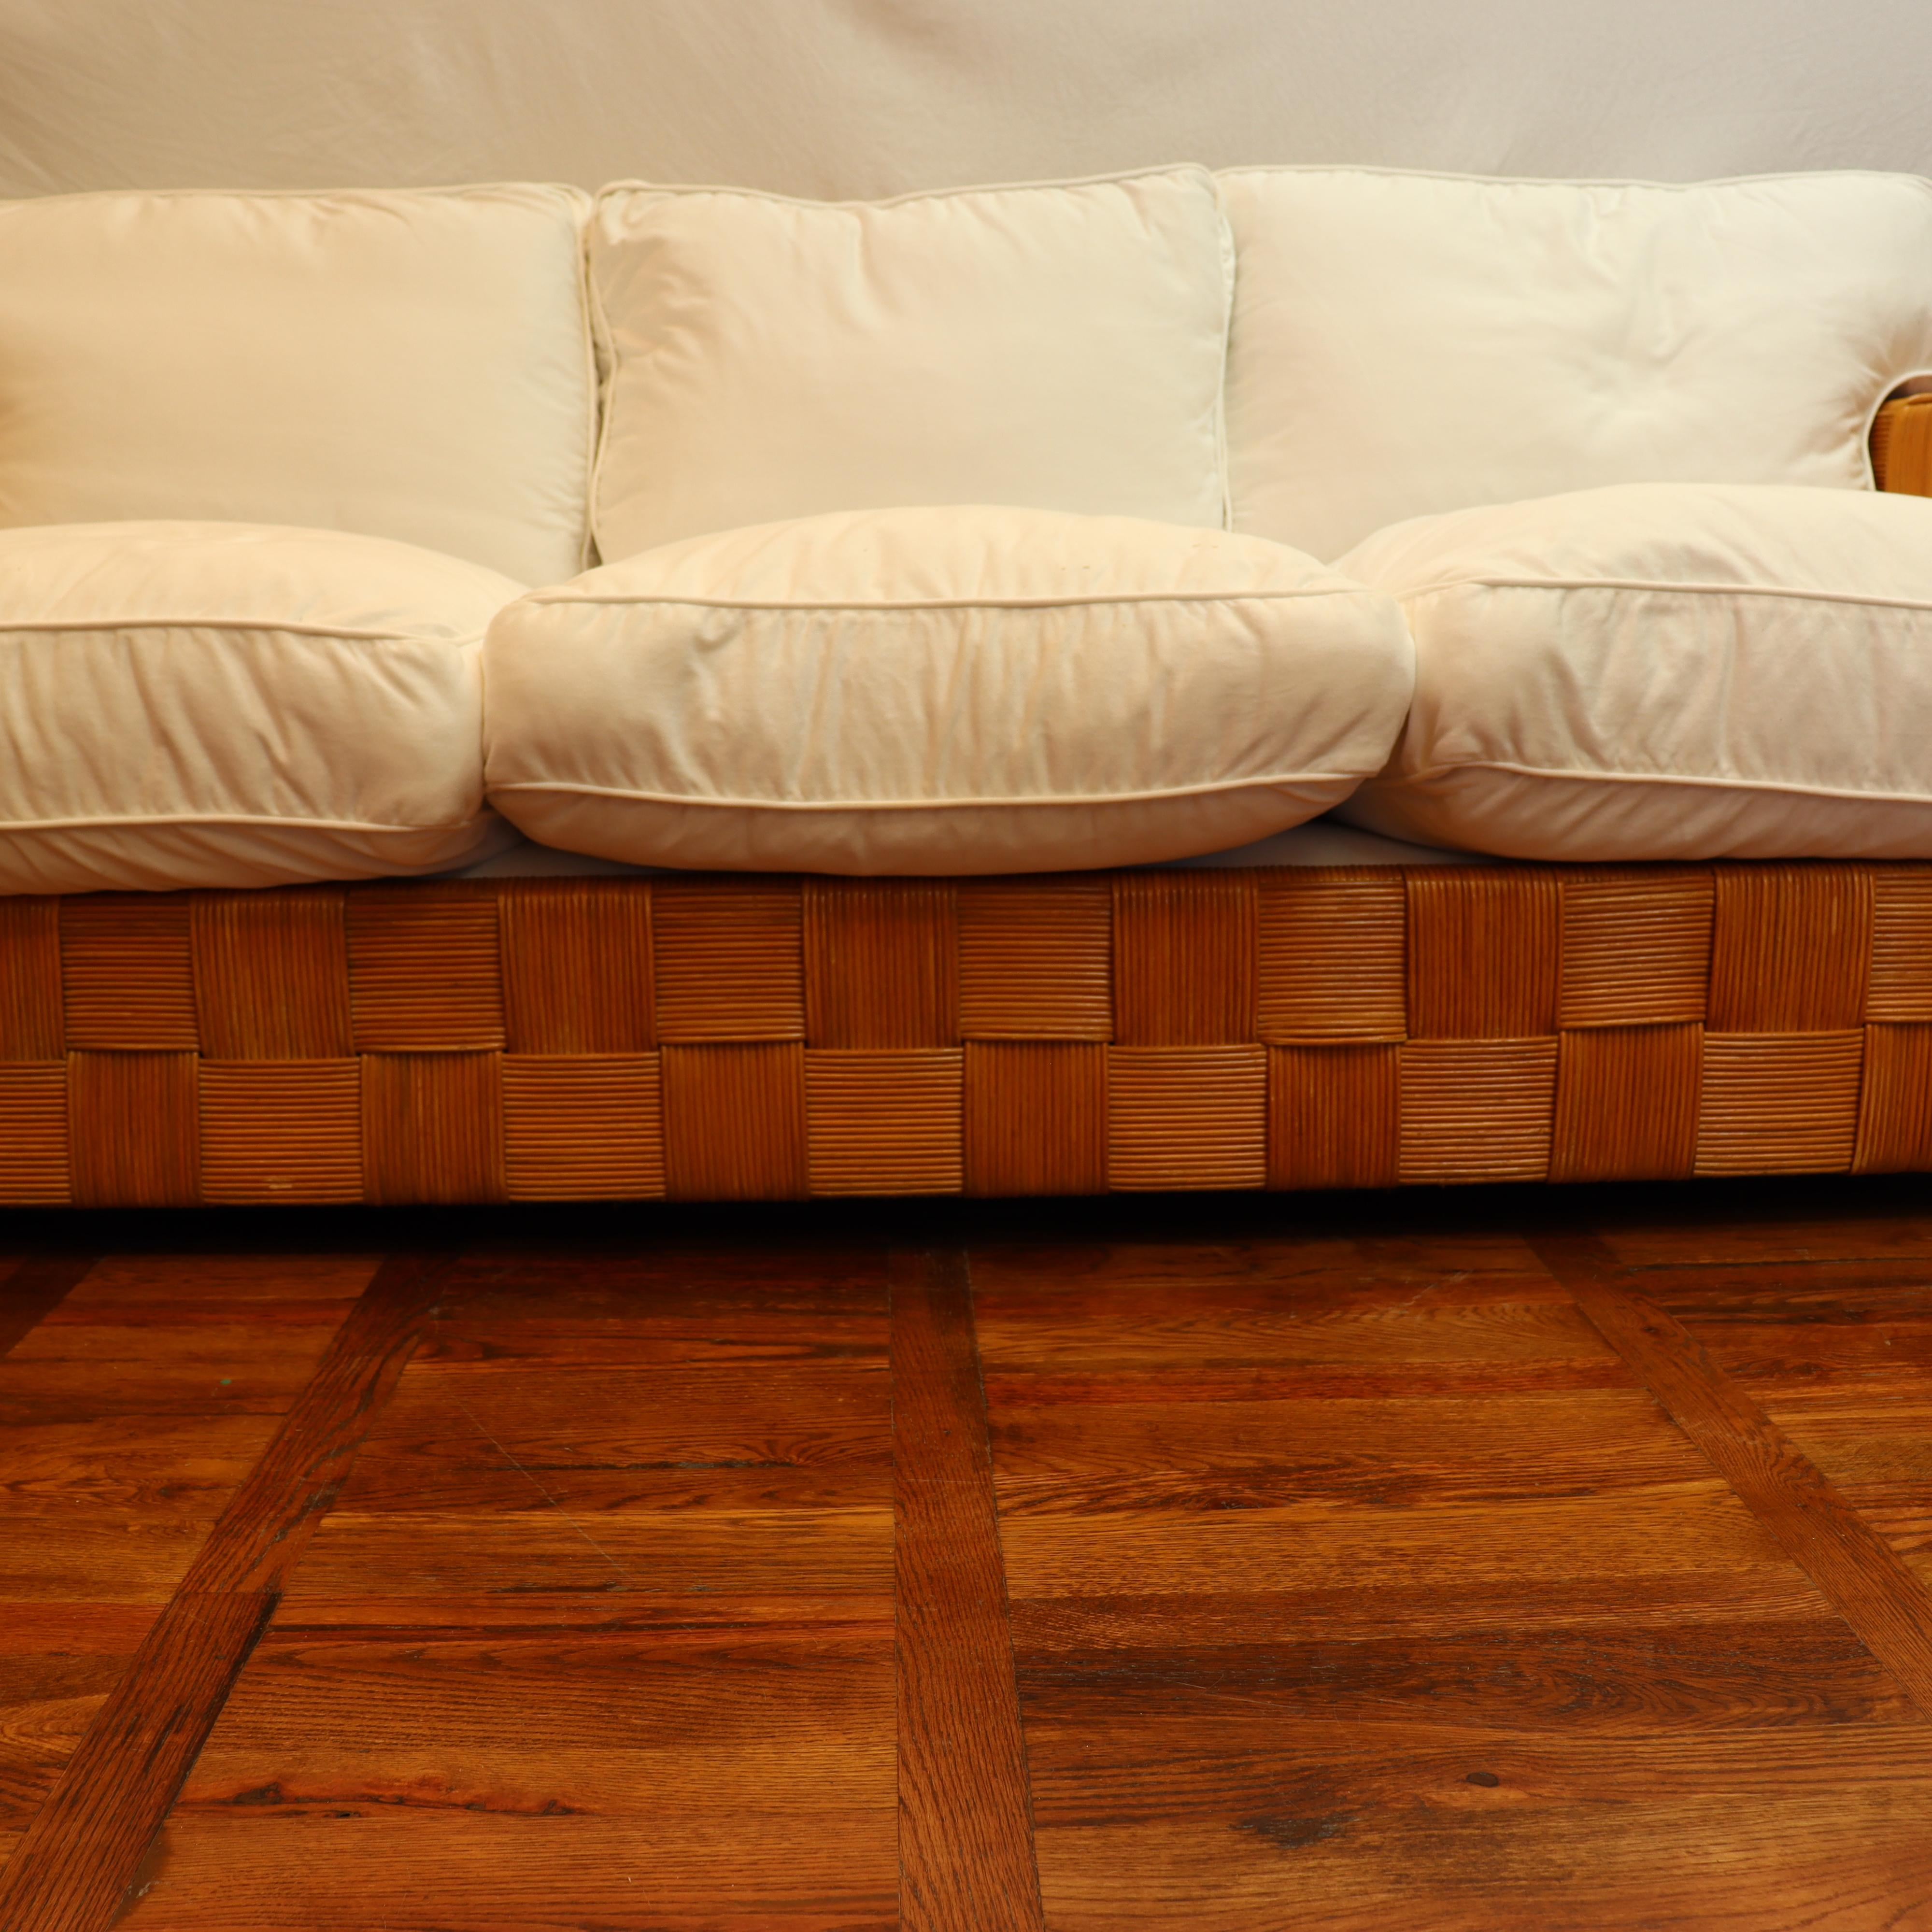 CIRCA 1990 Donghia Block Island Sofa entworfen von John Hutton. Geflochtener Rattanrahmen in sehr gutem Zustand, wie auf den Fotos zu sehen ist. Beide Sitz- und Rückenkissen wurden vor kurzem mit 100% weißem Baumwoll-Denim neu gepolstert. Die